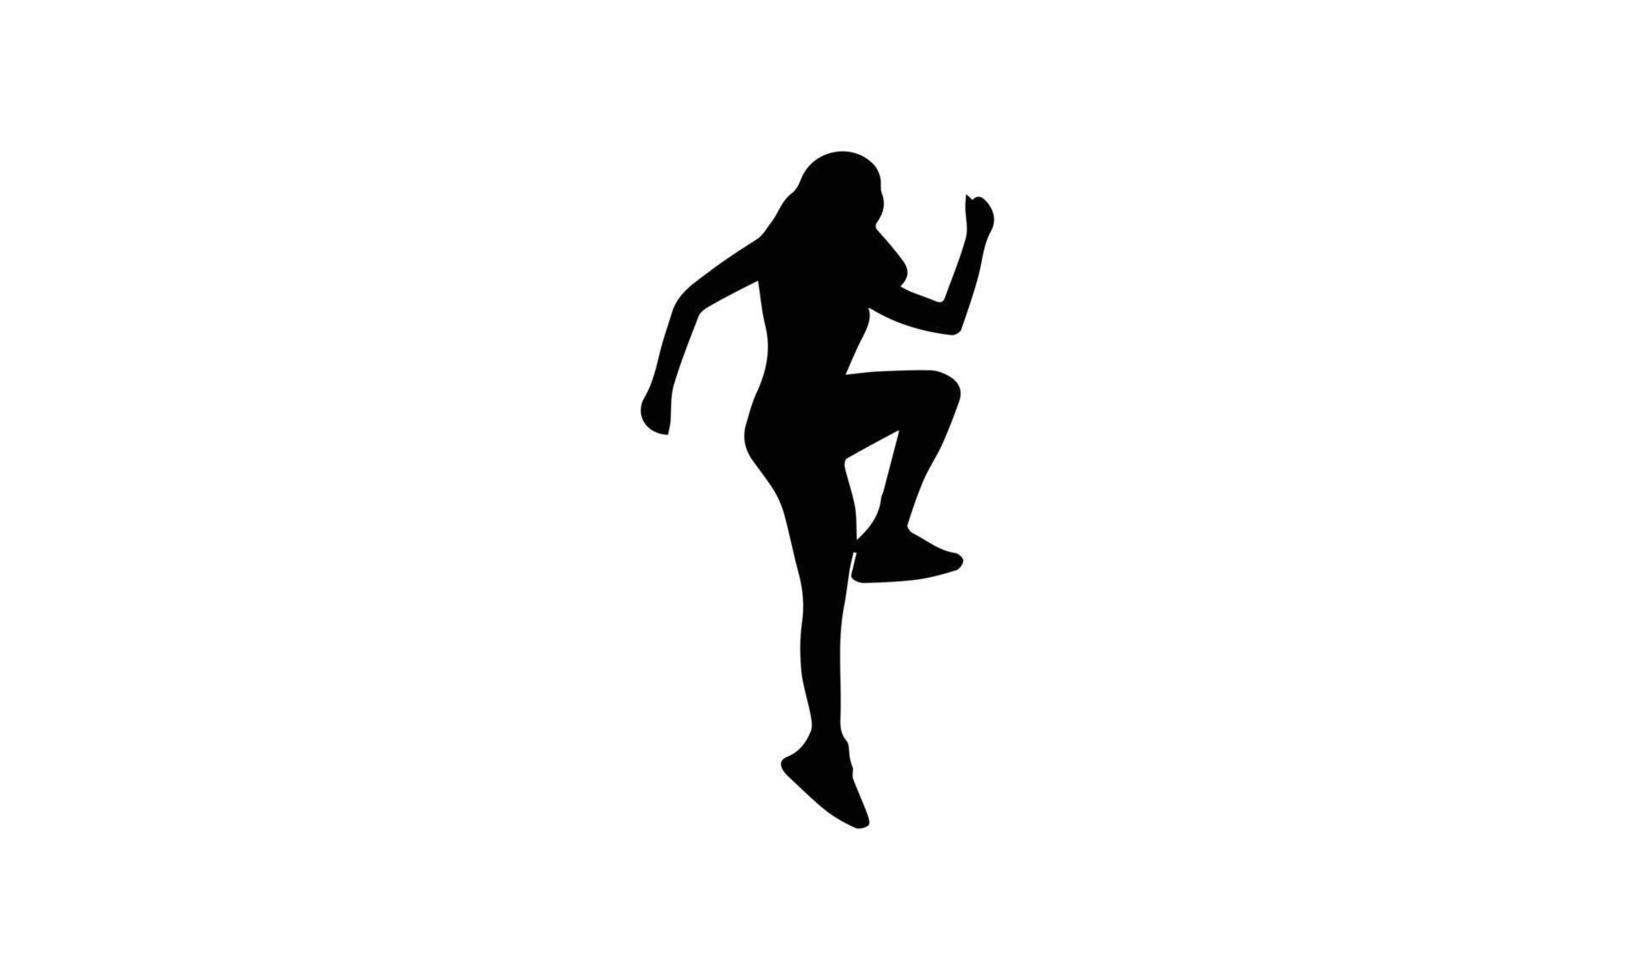 Runners on sprint men on white background. vector illustration